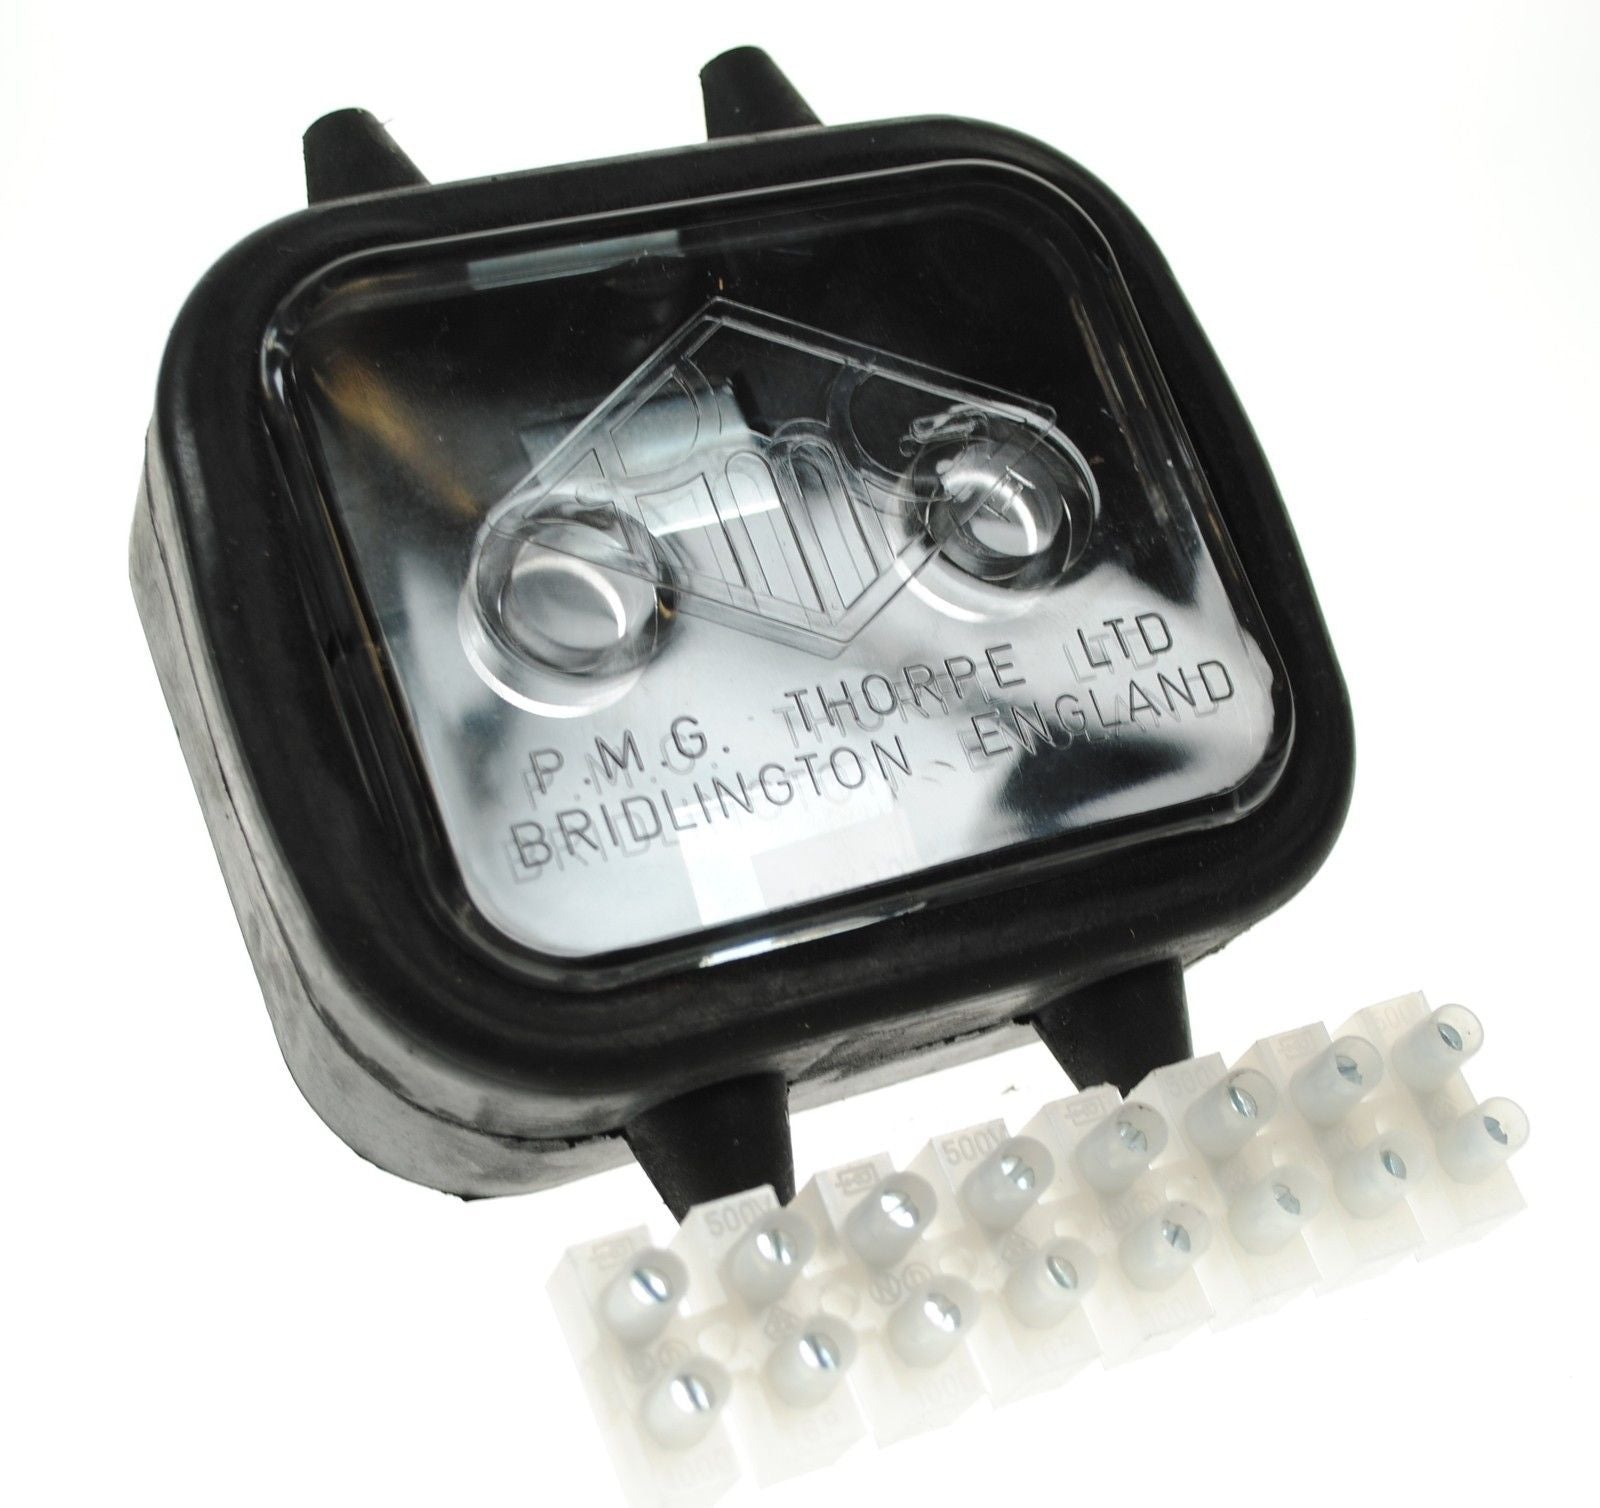 Caixa de connexió de goma Britax amb contactes de cargol / 8 vies - Fusibles i portafusibles - spo-cs-disabled - spo-default - spo-ena